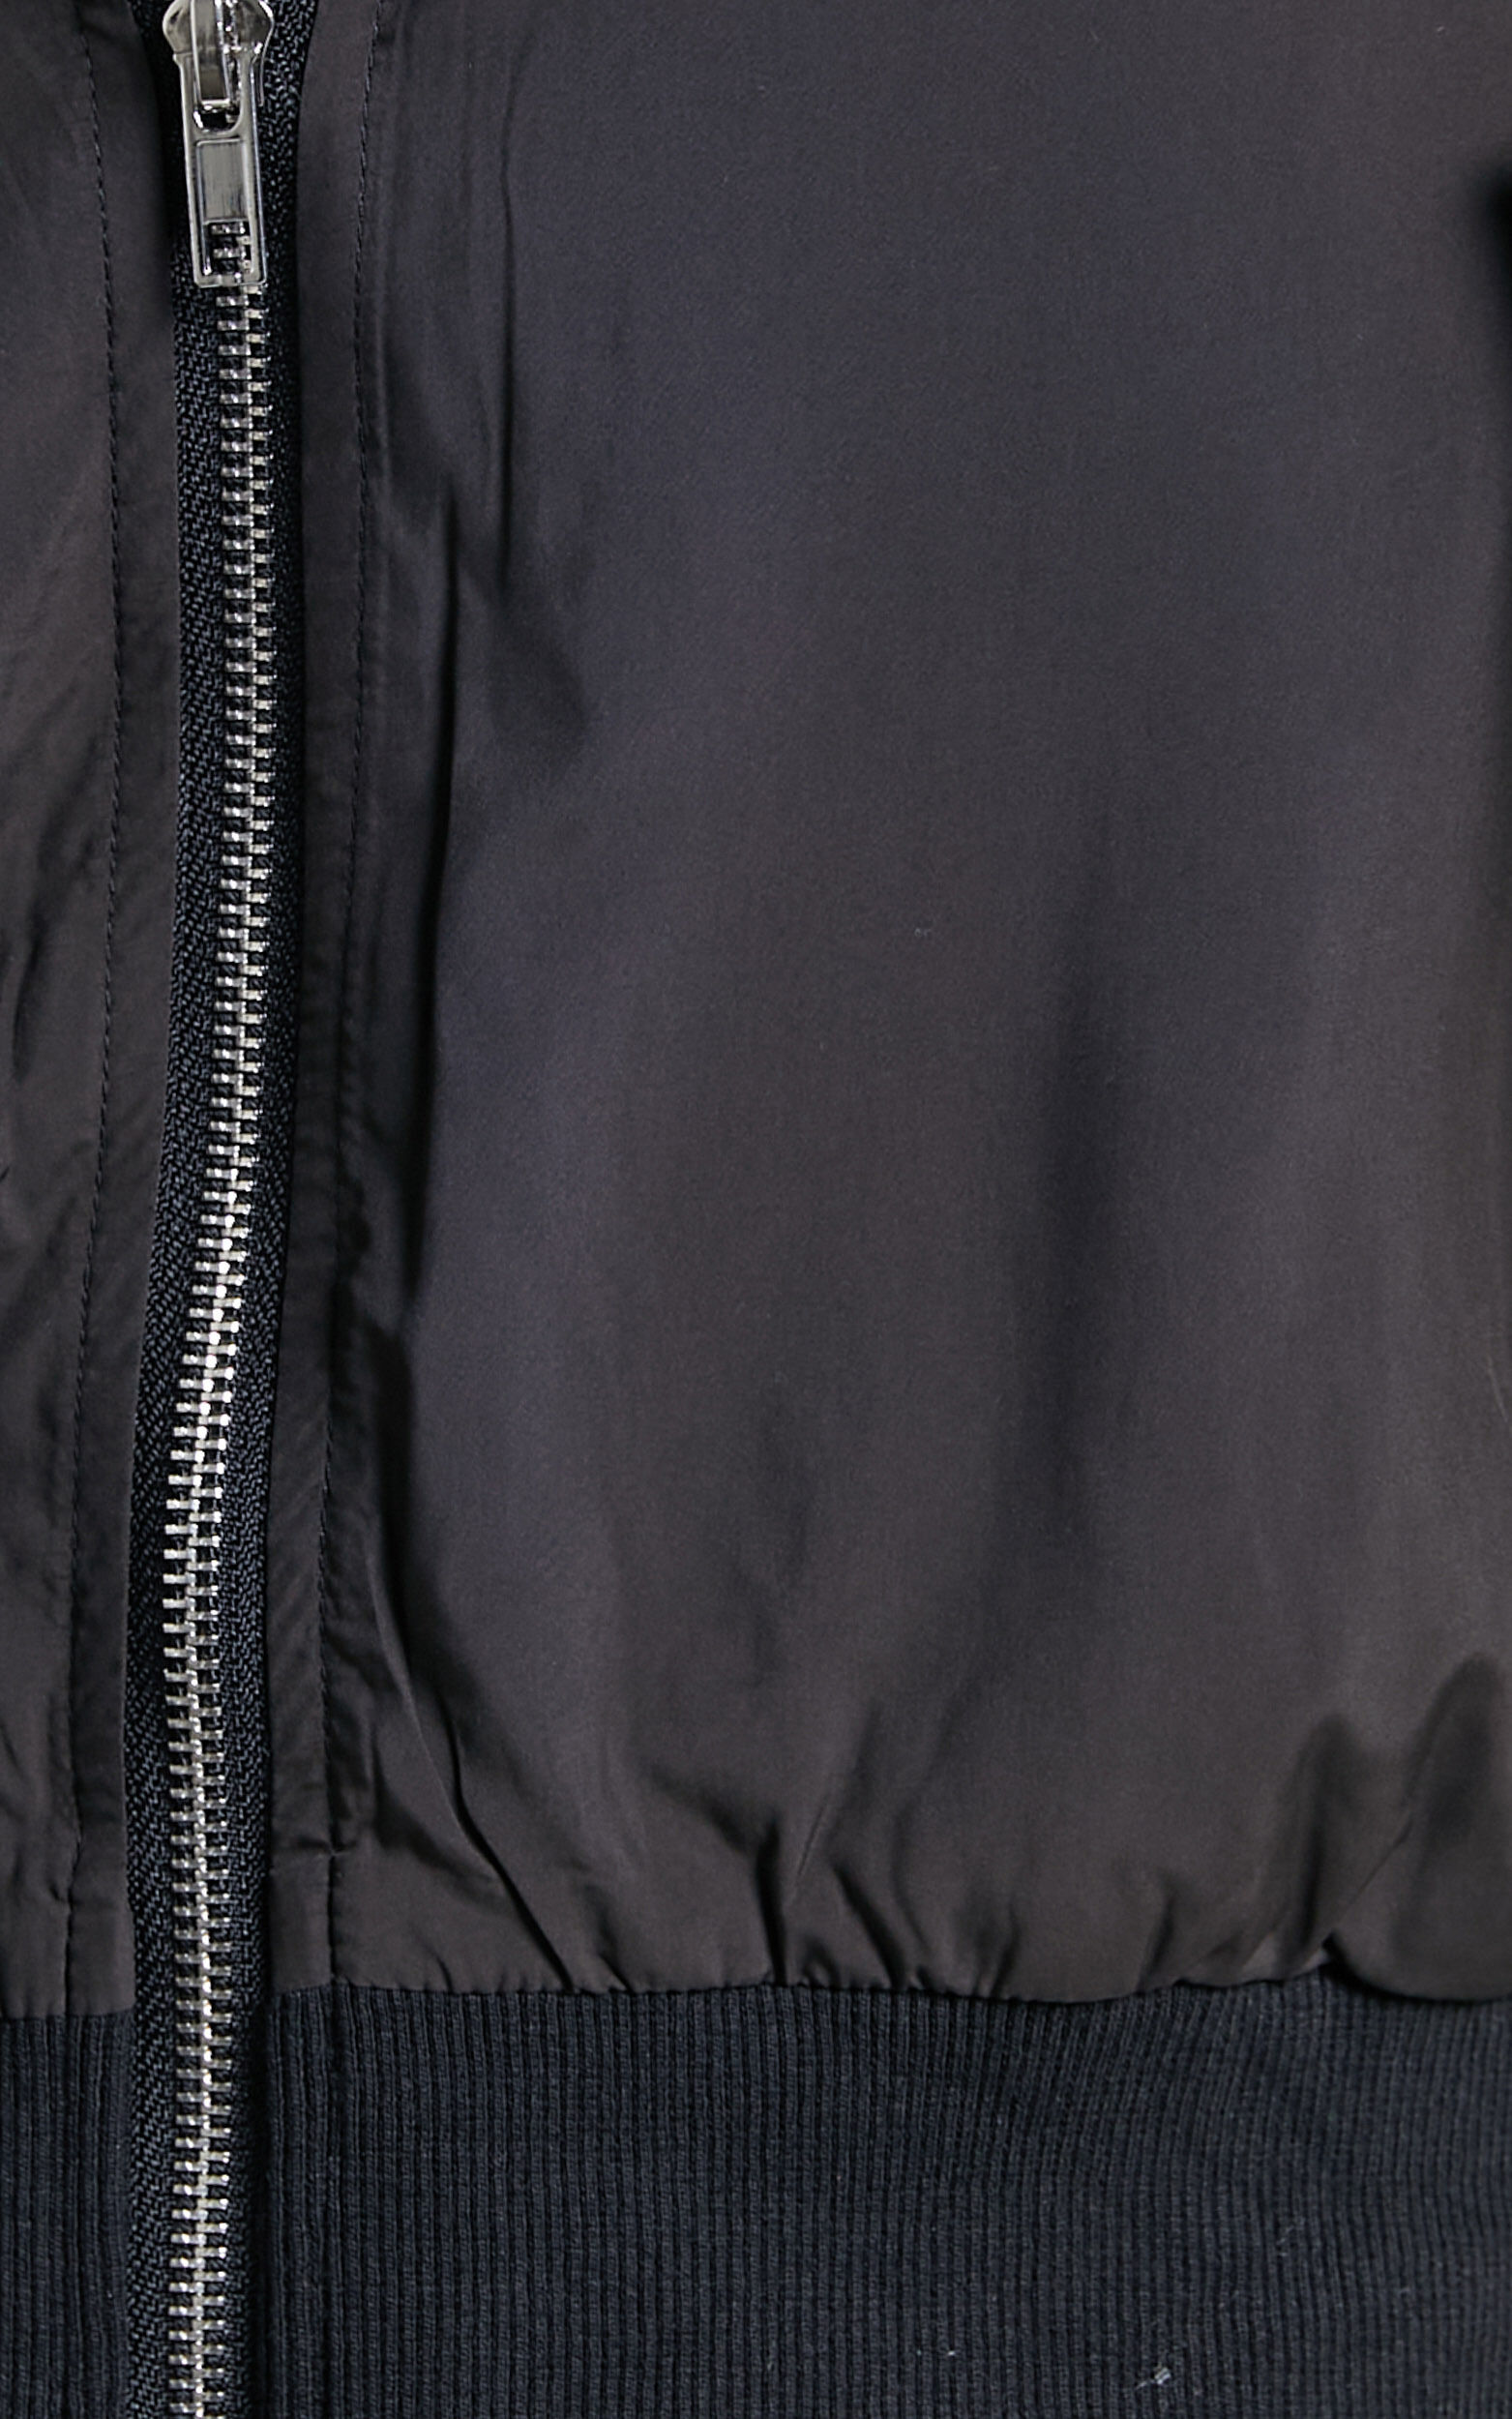 Sherlock Bomber Jacket in Black | Showpo